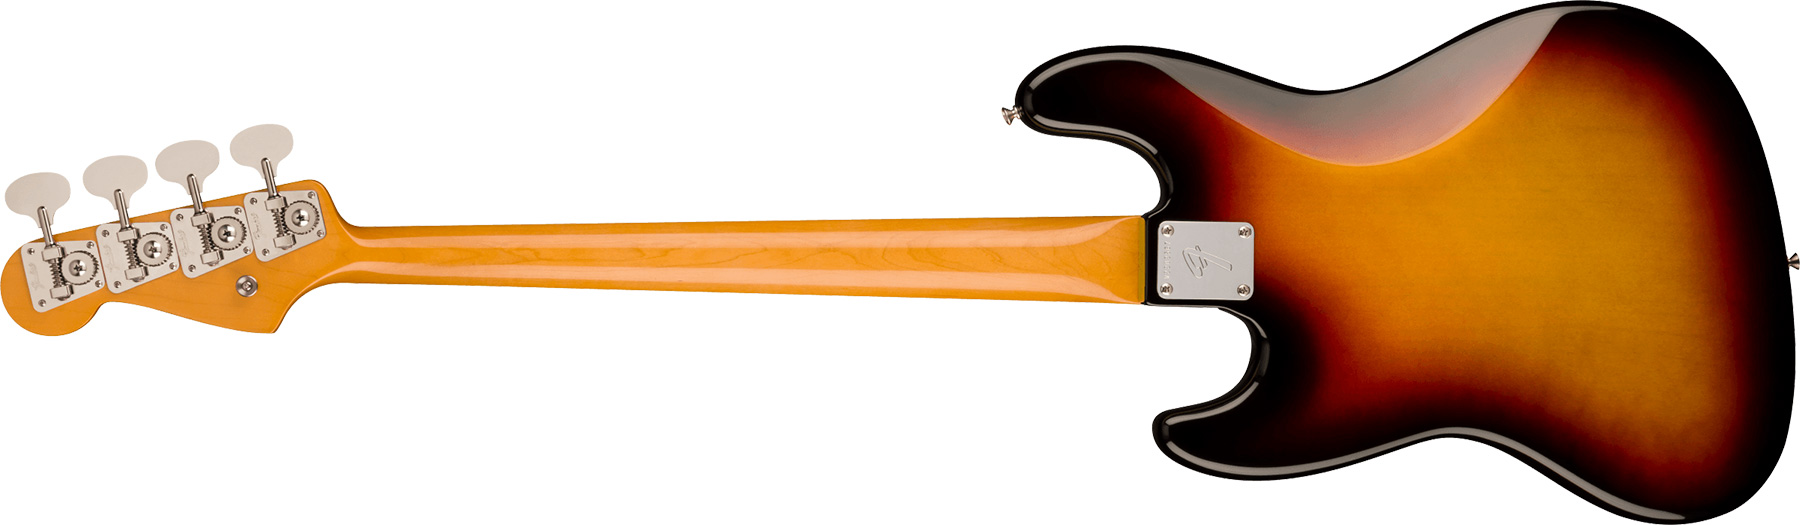 Fender Jazz Bass 1966 American Vintage Ii Usa Rw - 3-color Sunburst - Bajo eléctrico de cuerpo sólido - Variation 1